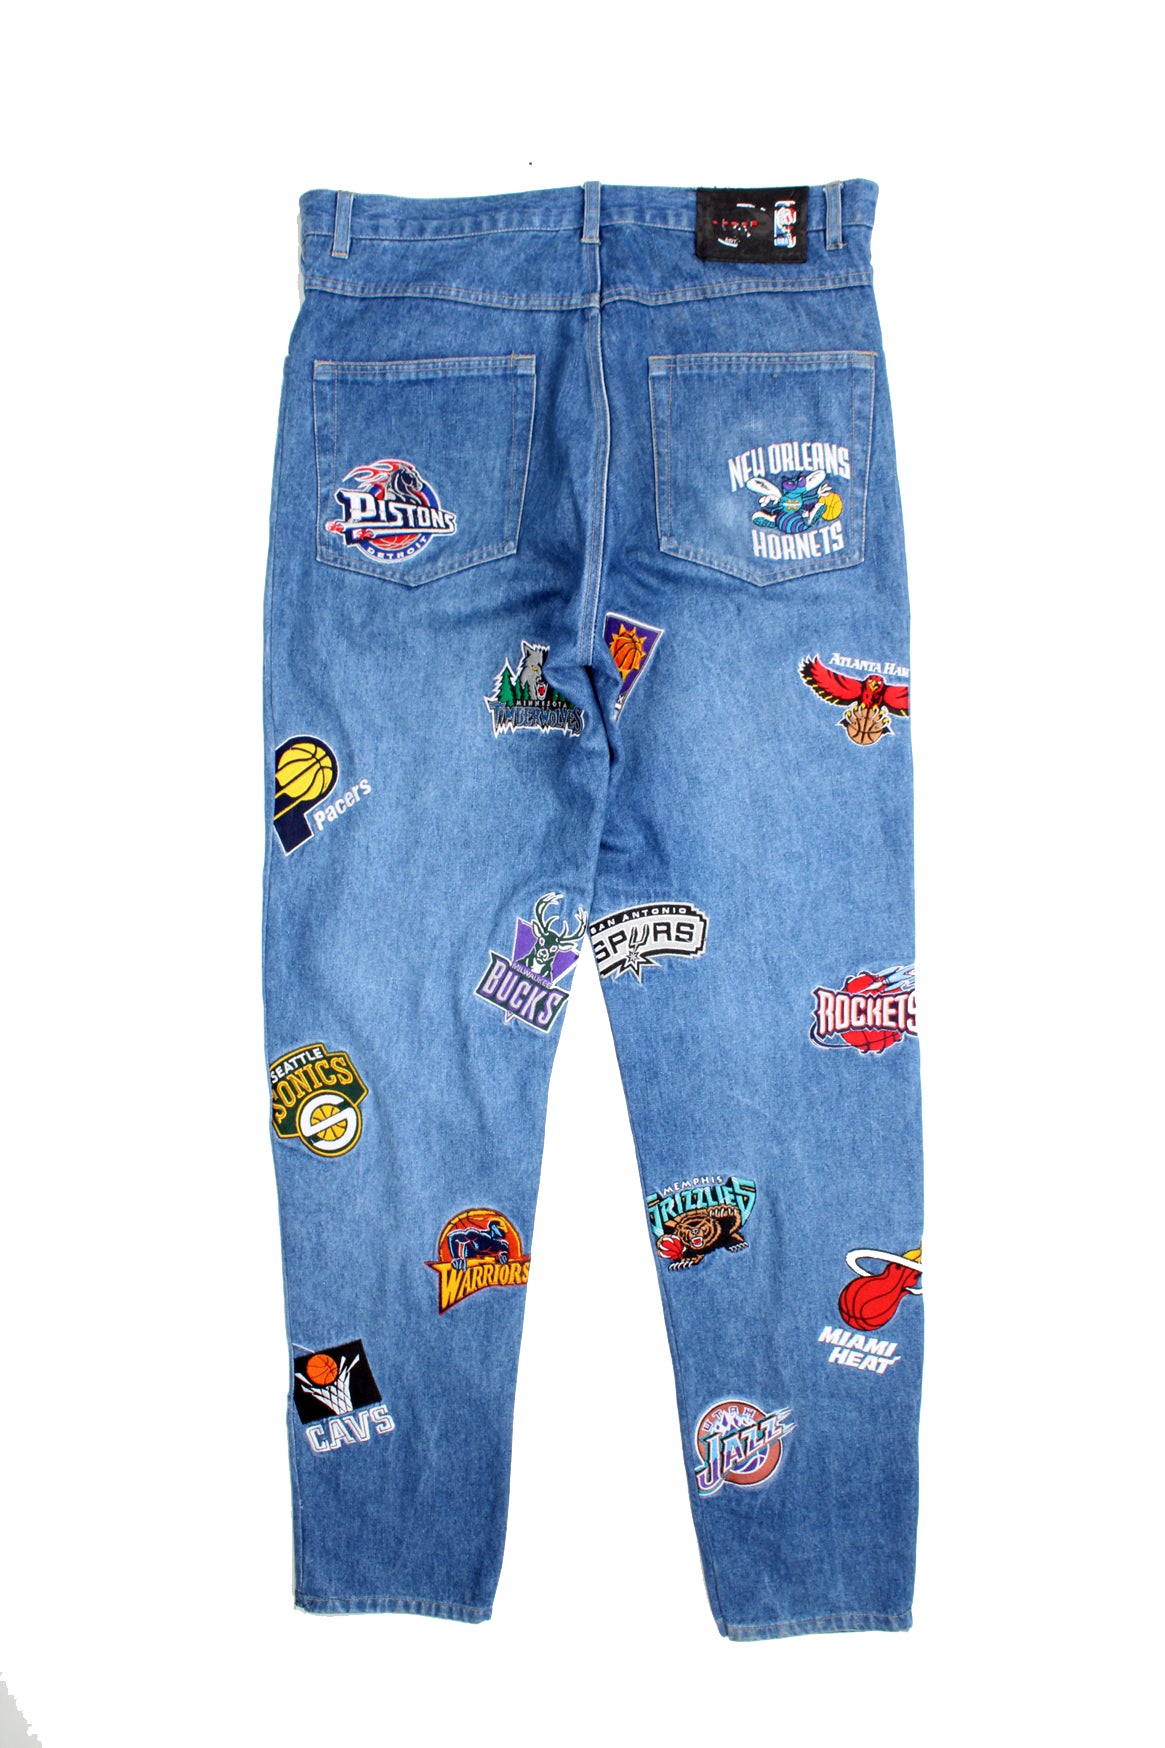 UNK NBA Jeans – VintageFolk